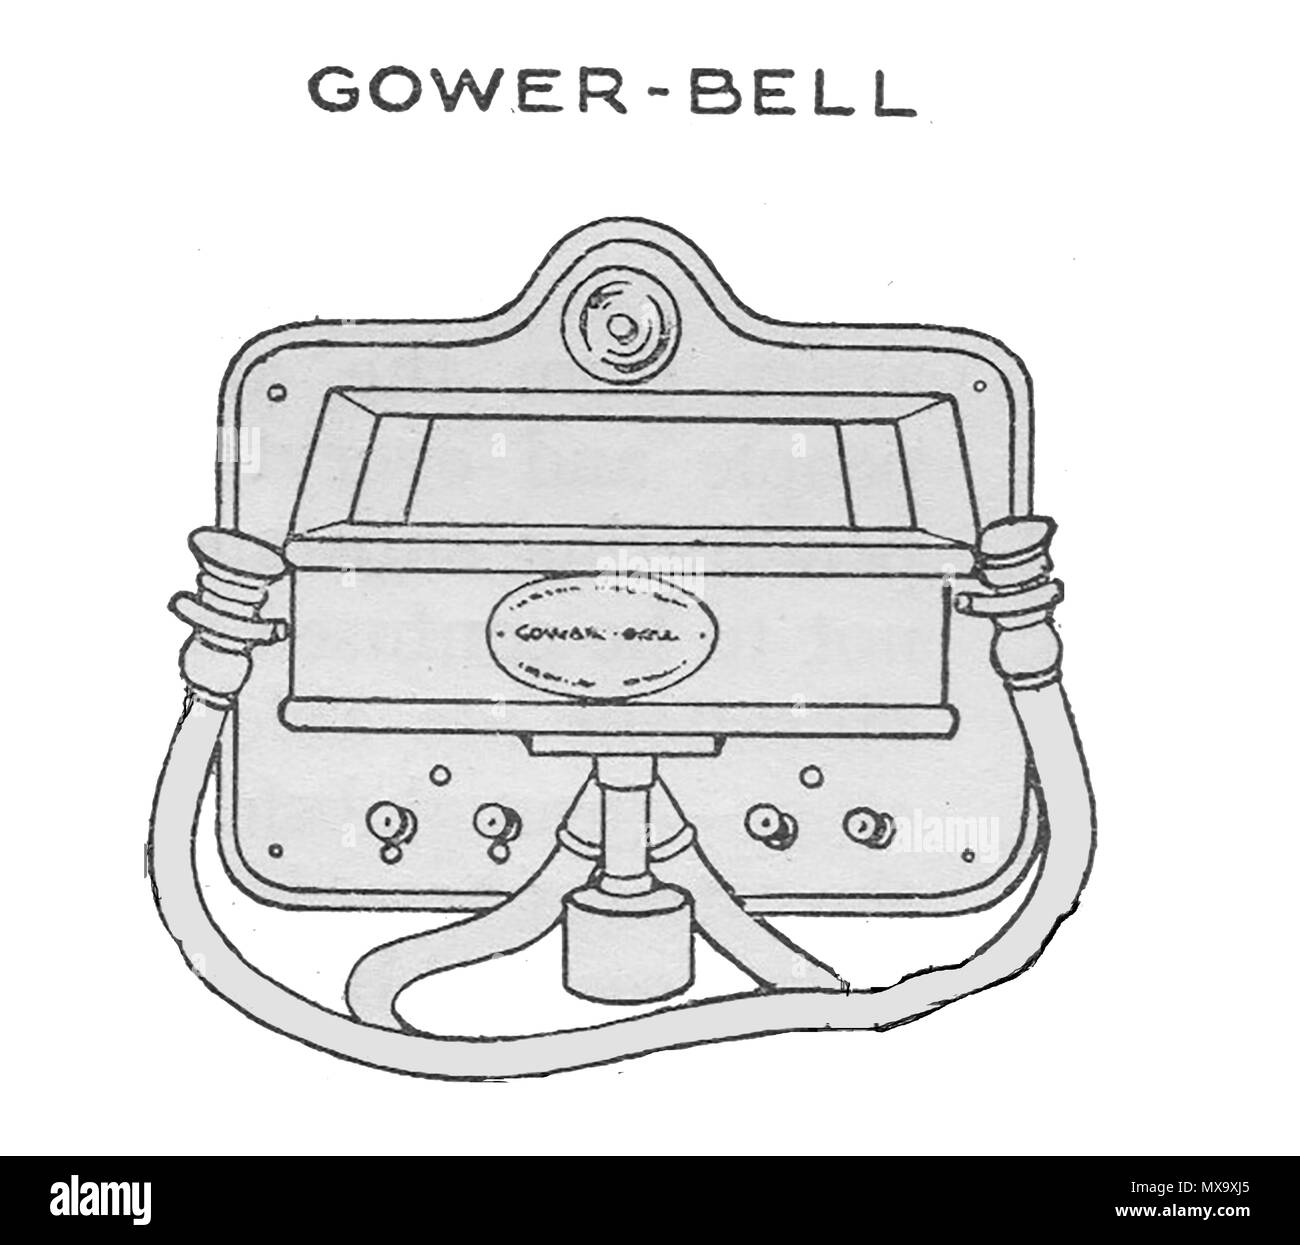 L'équipement téléphonique au début de 1930 - illustration d'un Gower-Bell appareil téléphonique. Banque D'Images